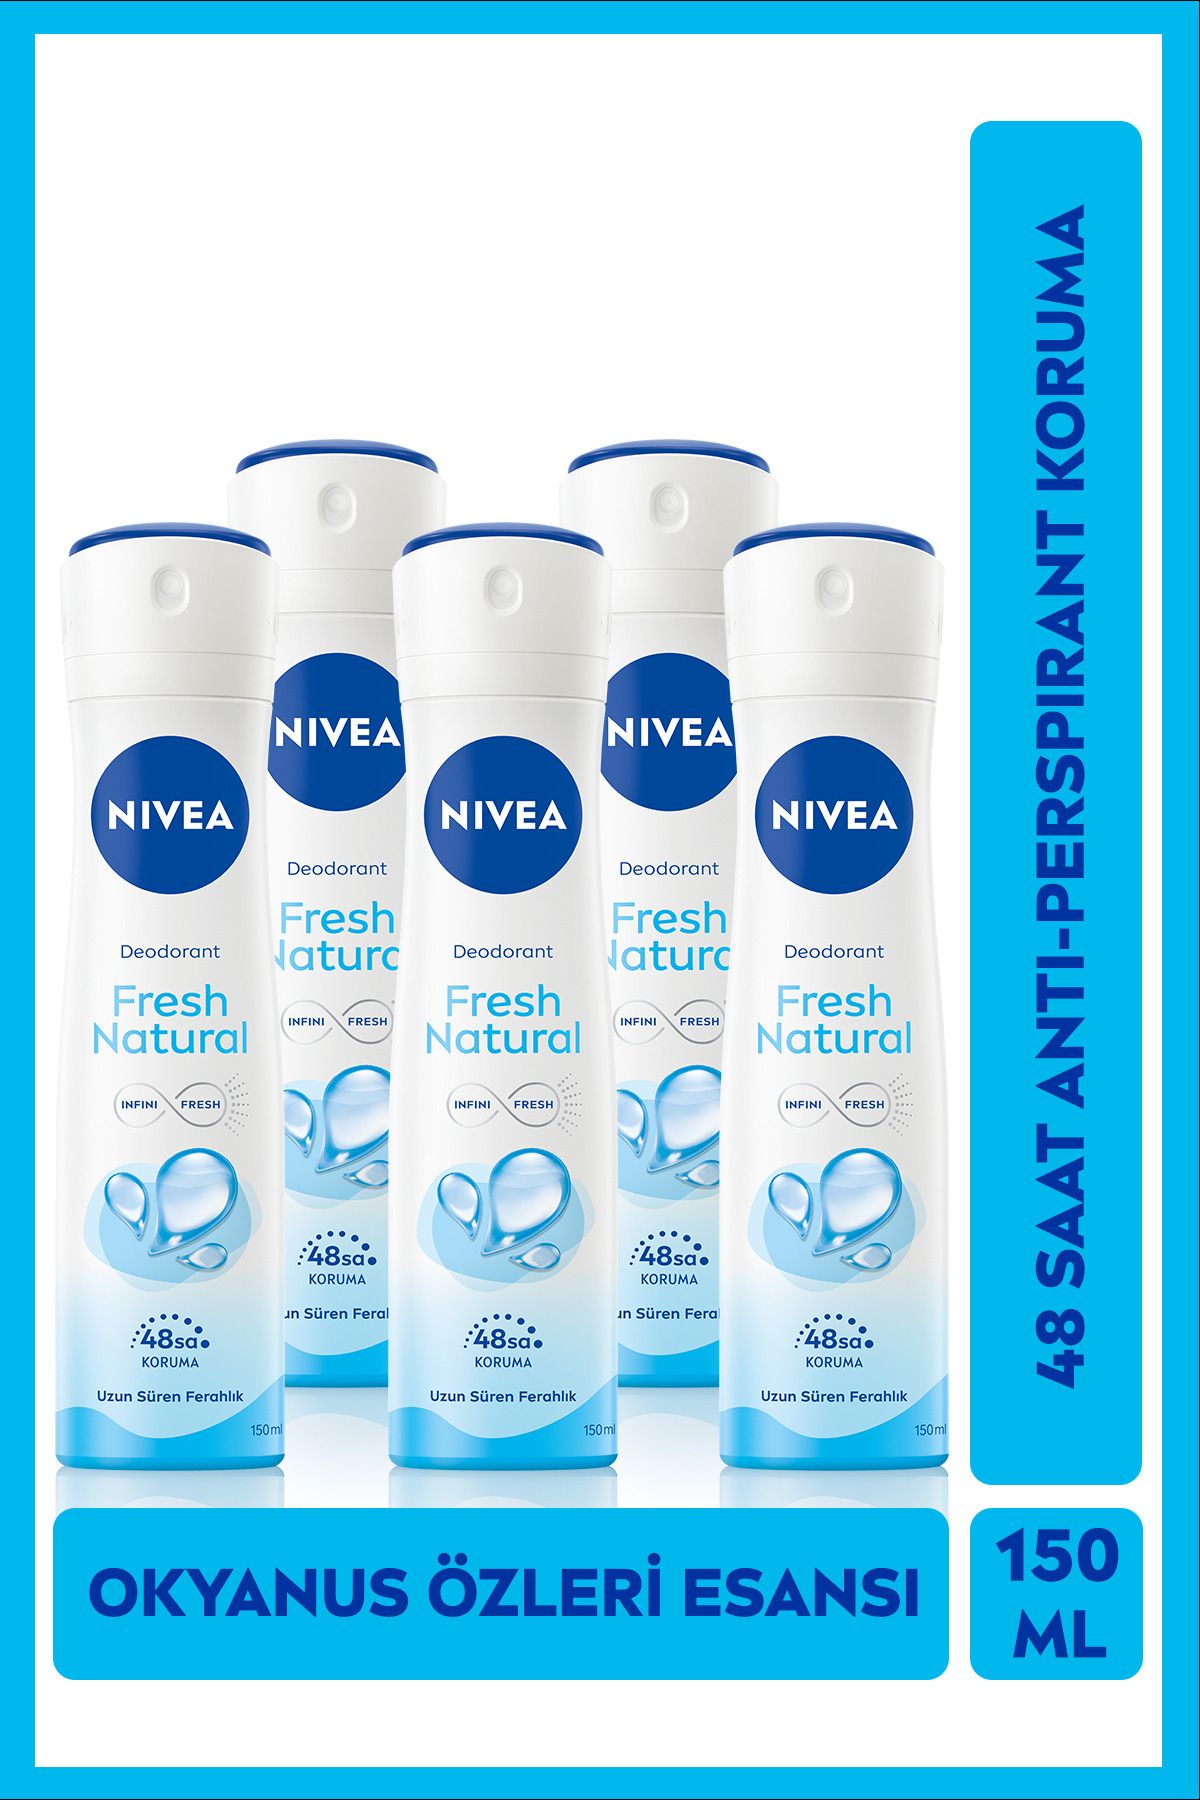 NIVEA Kadın Sprey Deodorant Fresh Natural 48 Saat Deodorant Koruması 150ml X 5 Adet